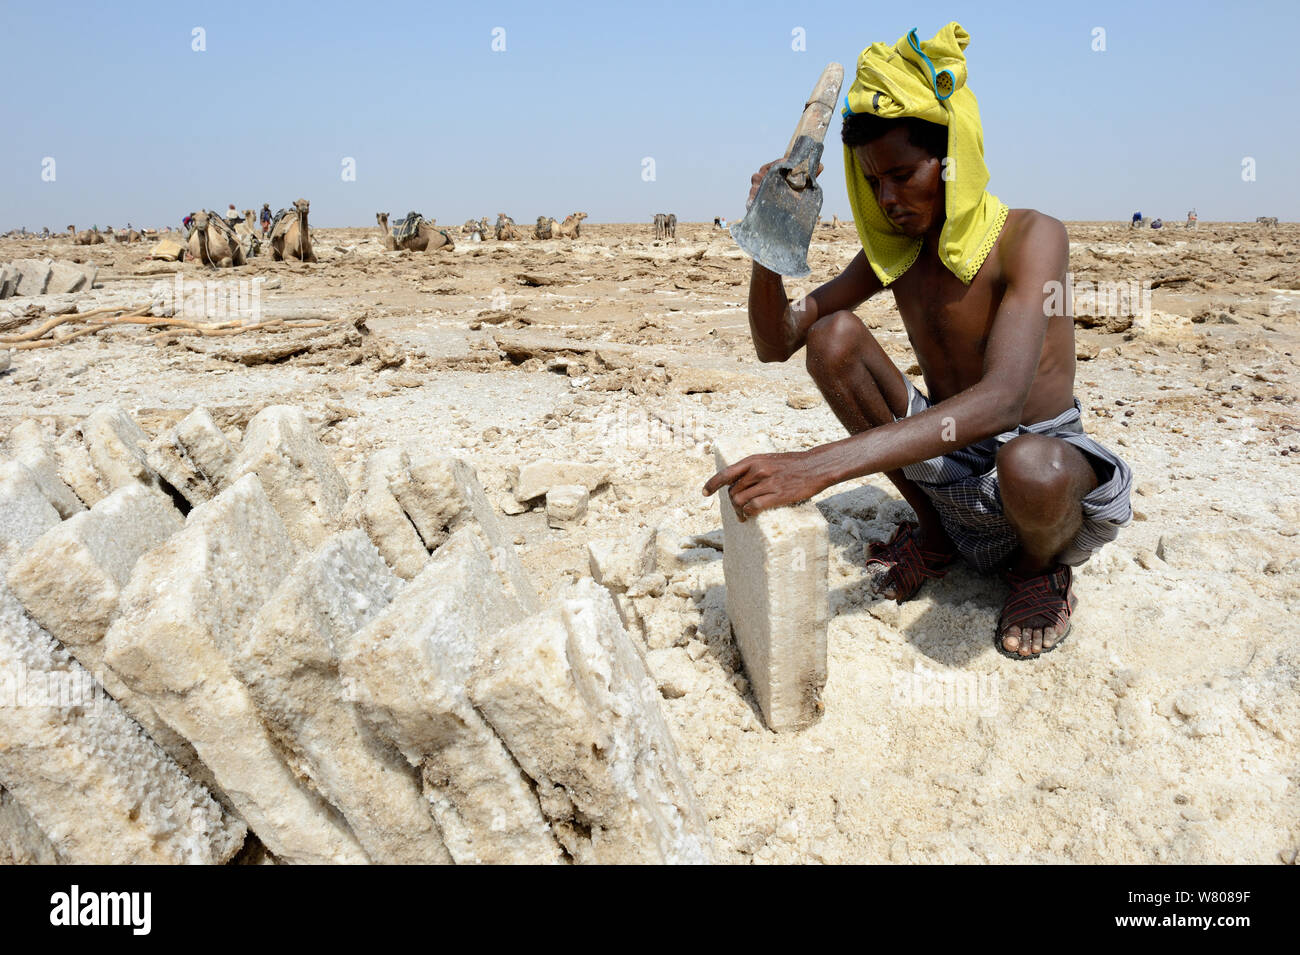 Von Ferne Mann in Blöcke schneiden Salz, See Assale, Danakil Depression, ferne Region, Äthiopien, März 2015. Stockfoto